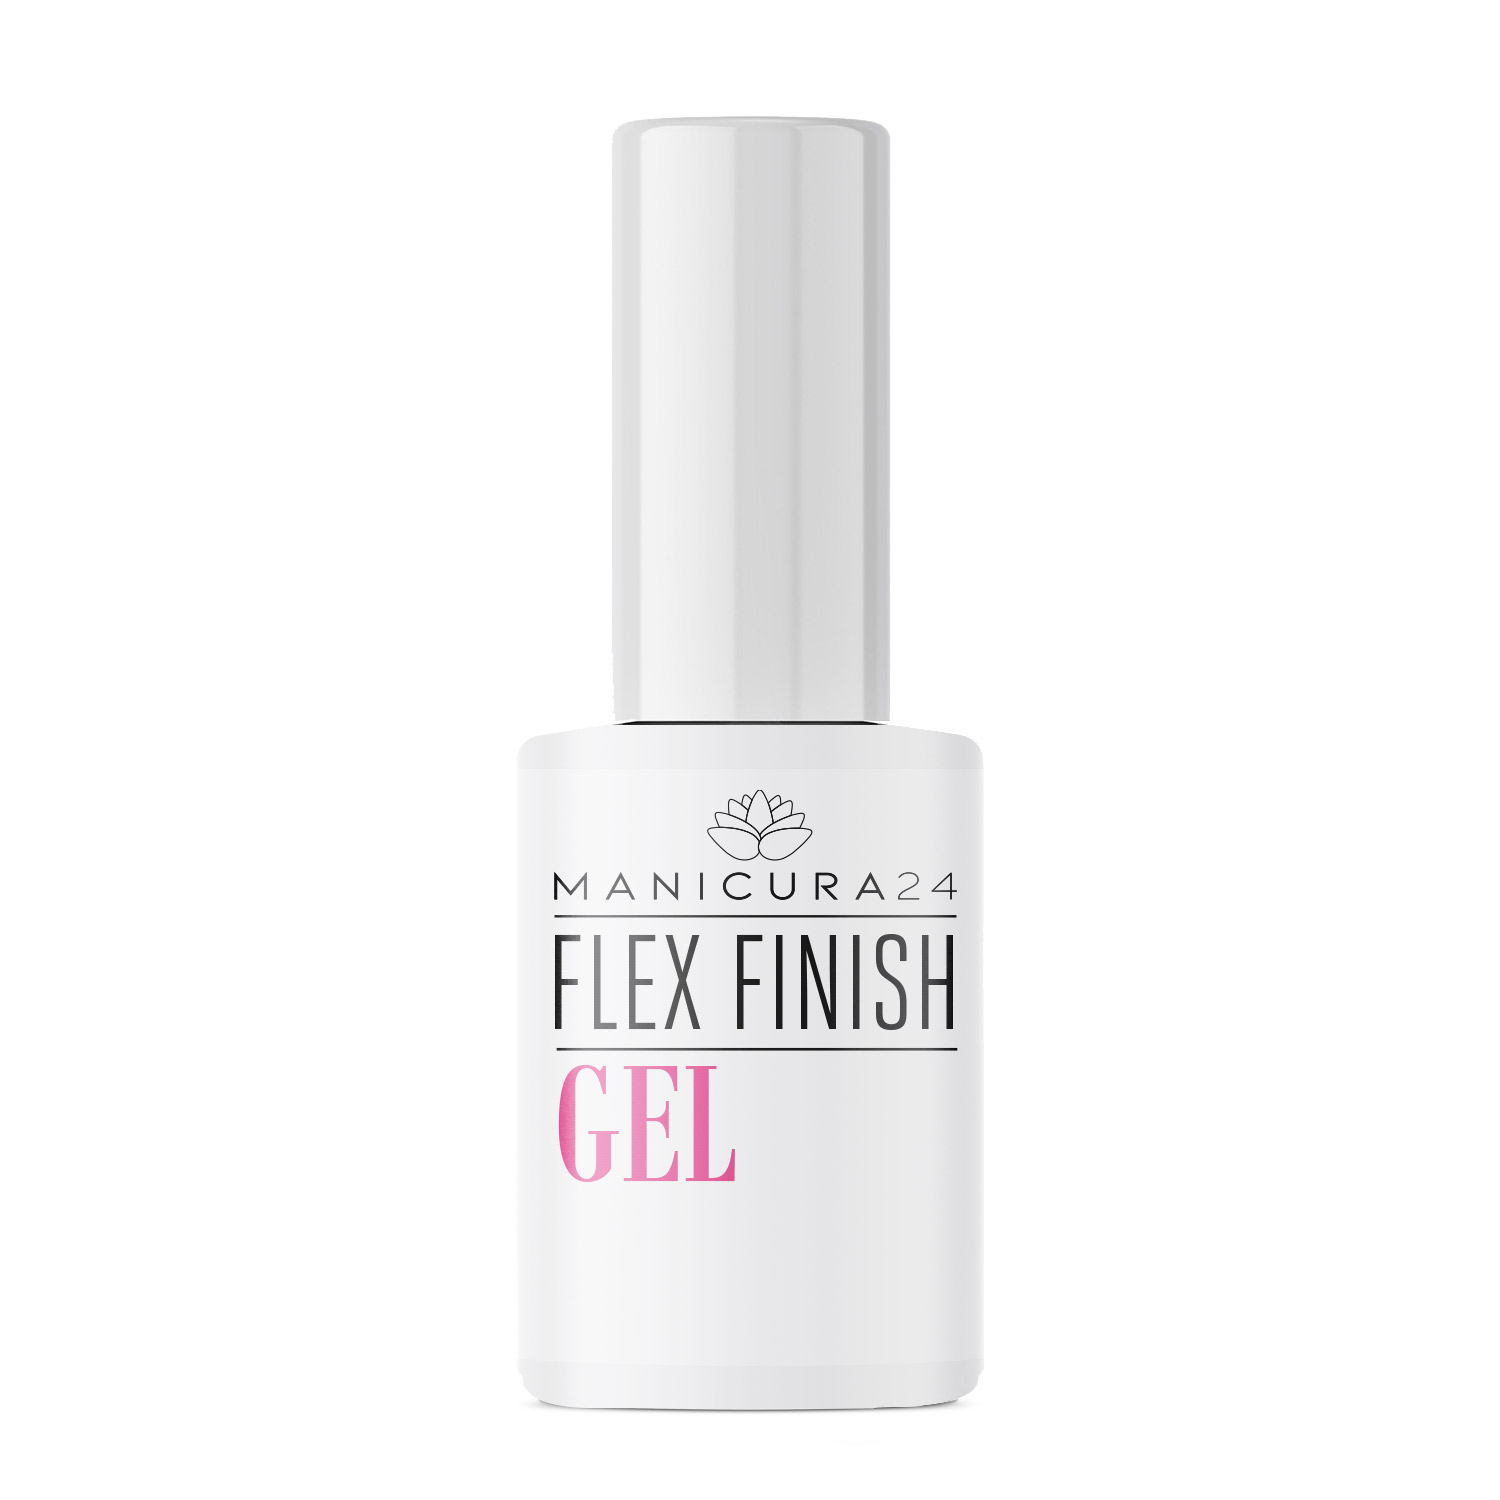 Flex finish gel - brillo gloss para uñas de gel y acrílicas